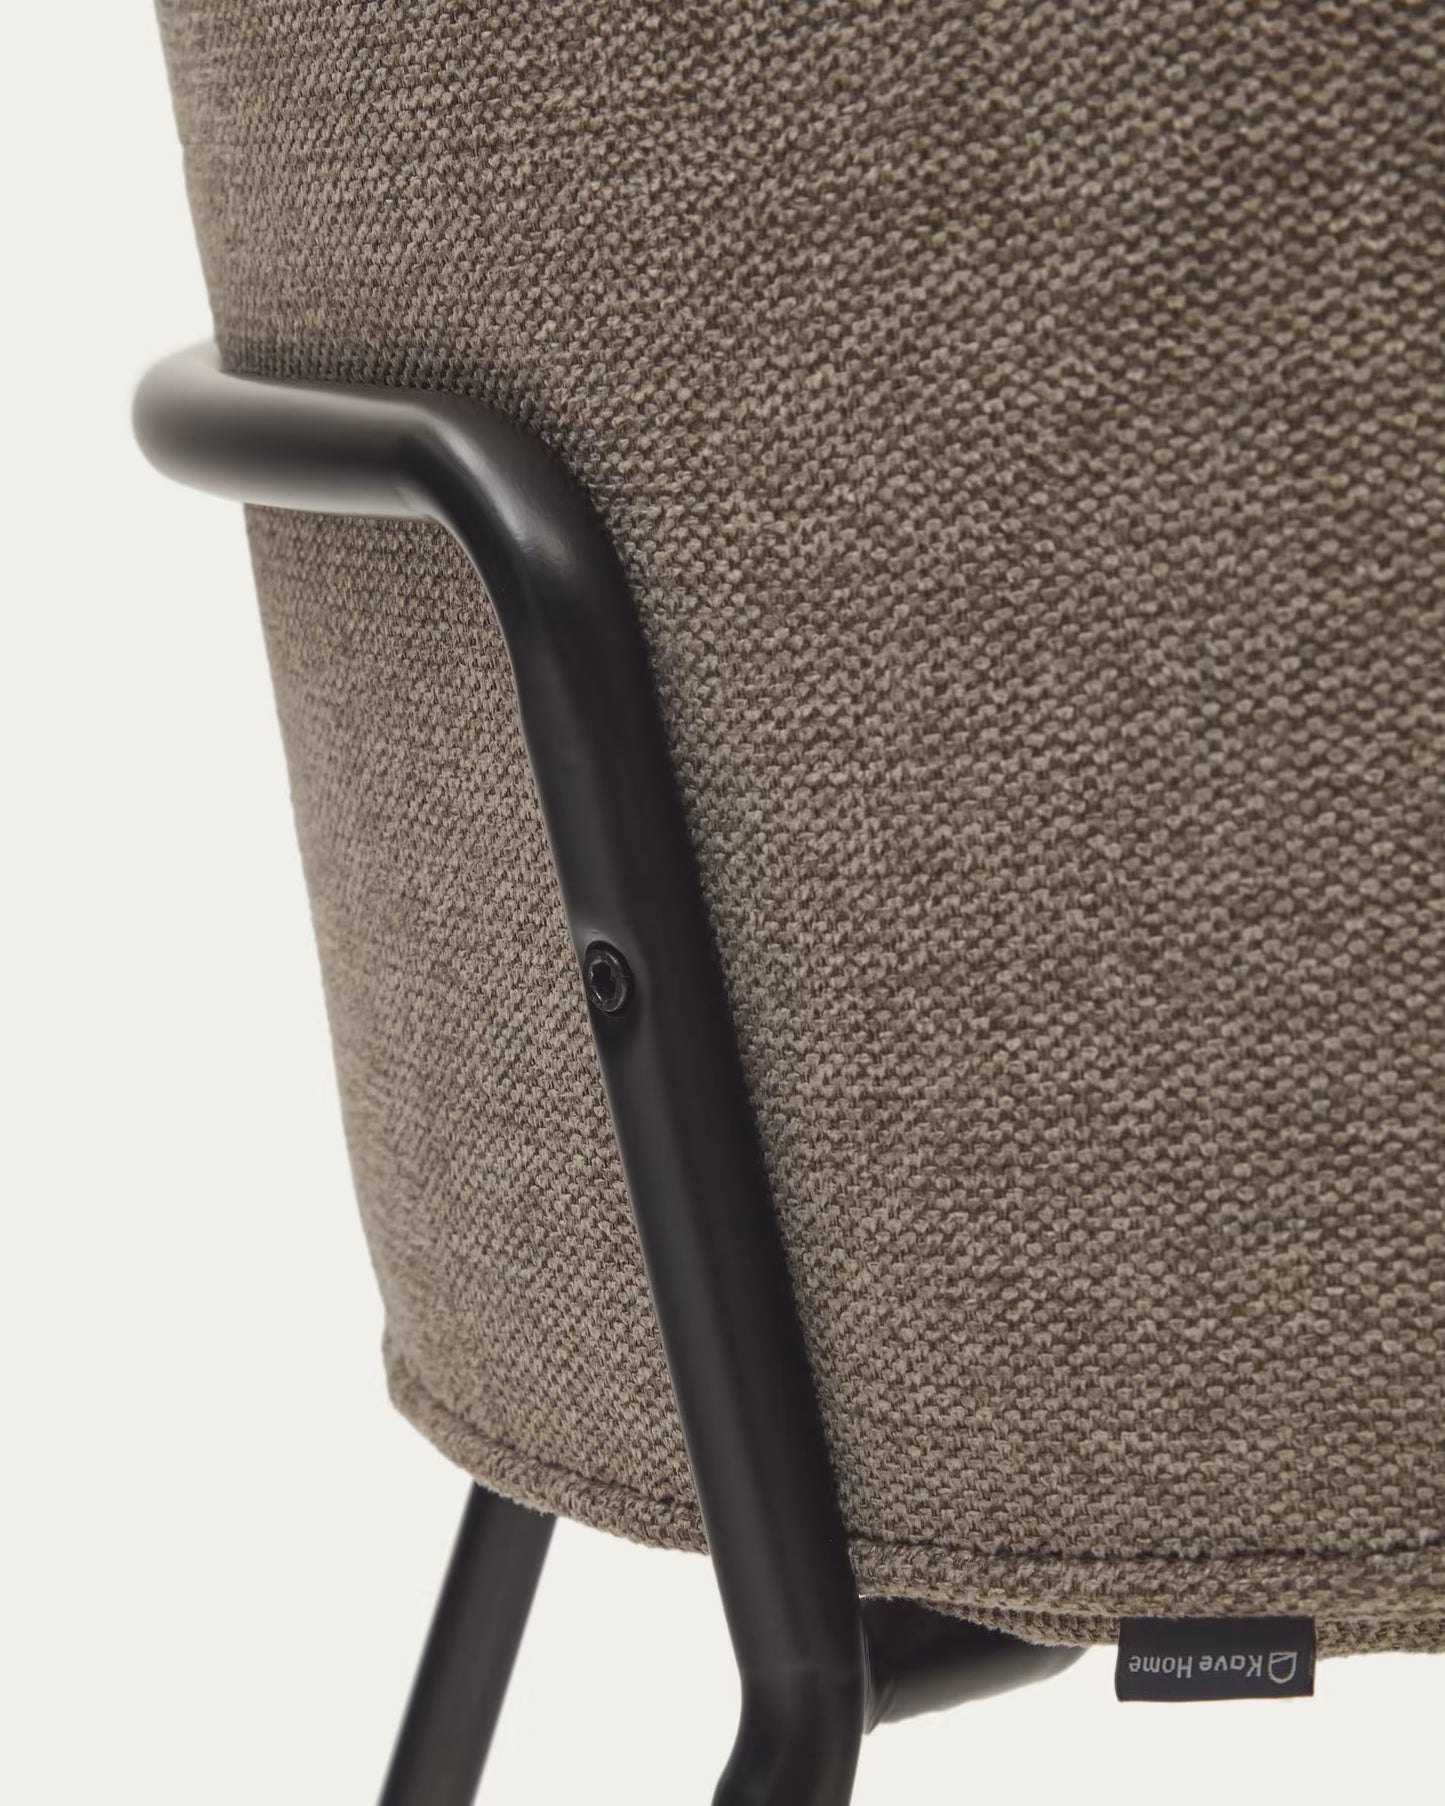 
                  
                    MELINA - Stuhl in braun mit Stahlbeinen mit schwarzem Finish
                  
                